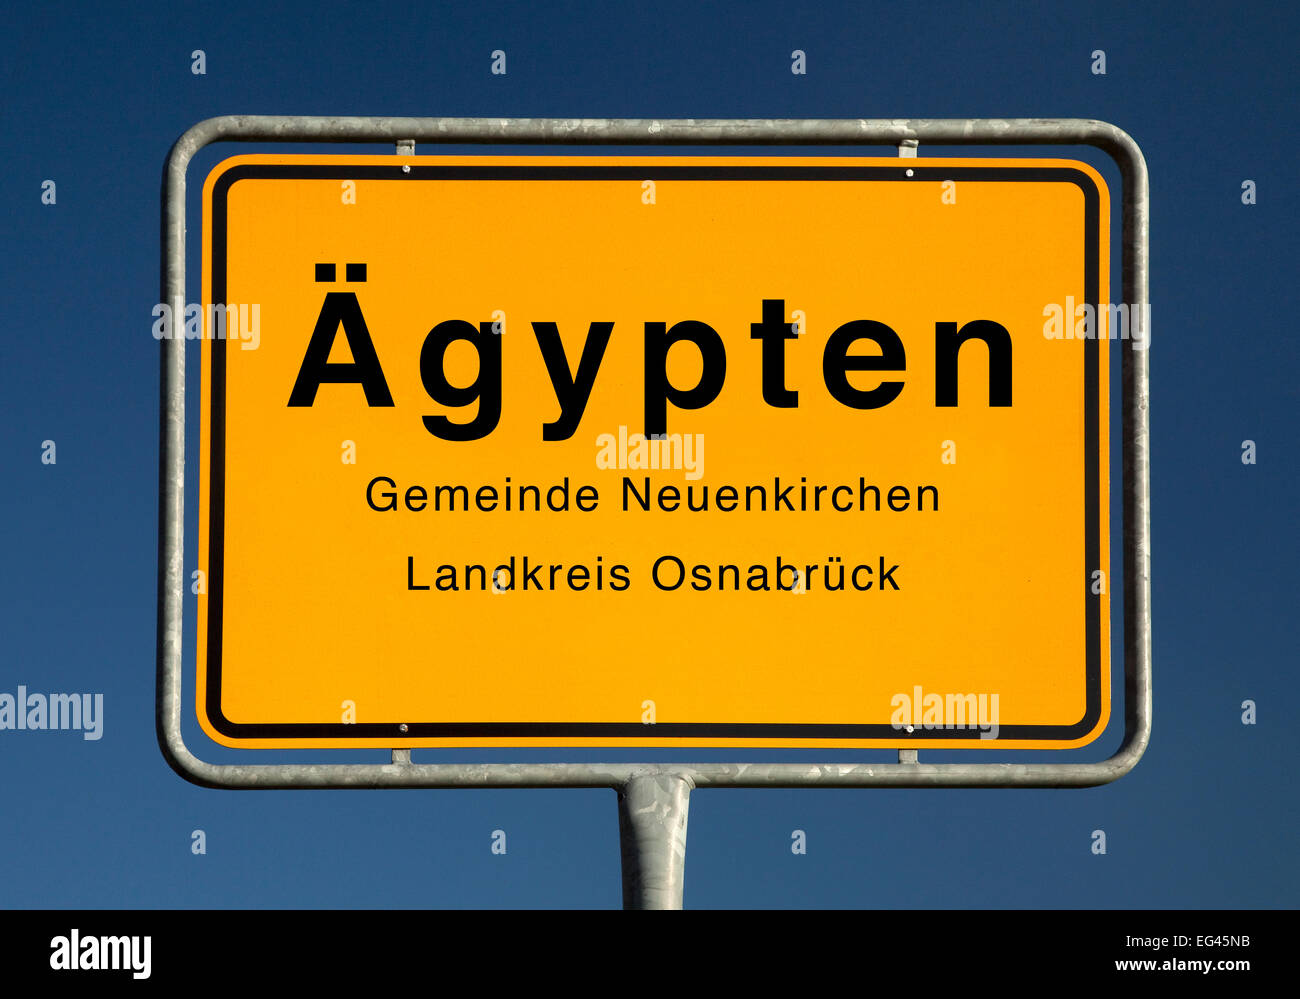 City Limits sign of Ägypten, municipality of Neuenkirchen, district of Osnabrück, Lower Saxony, Germany Stock Photo